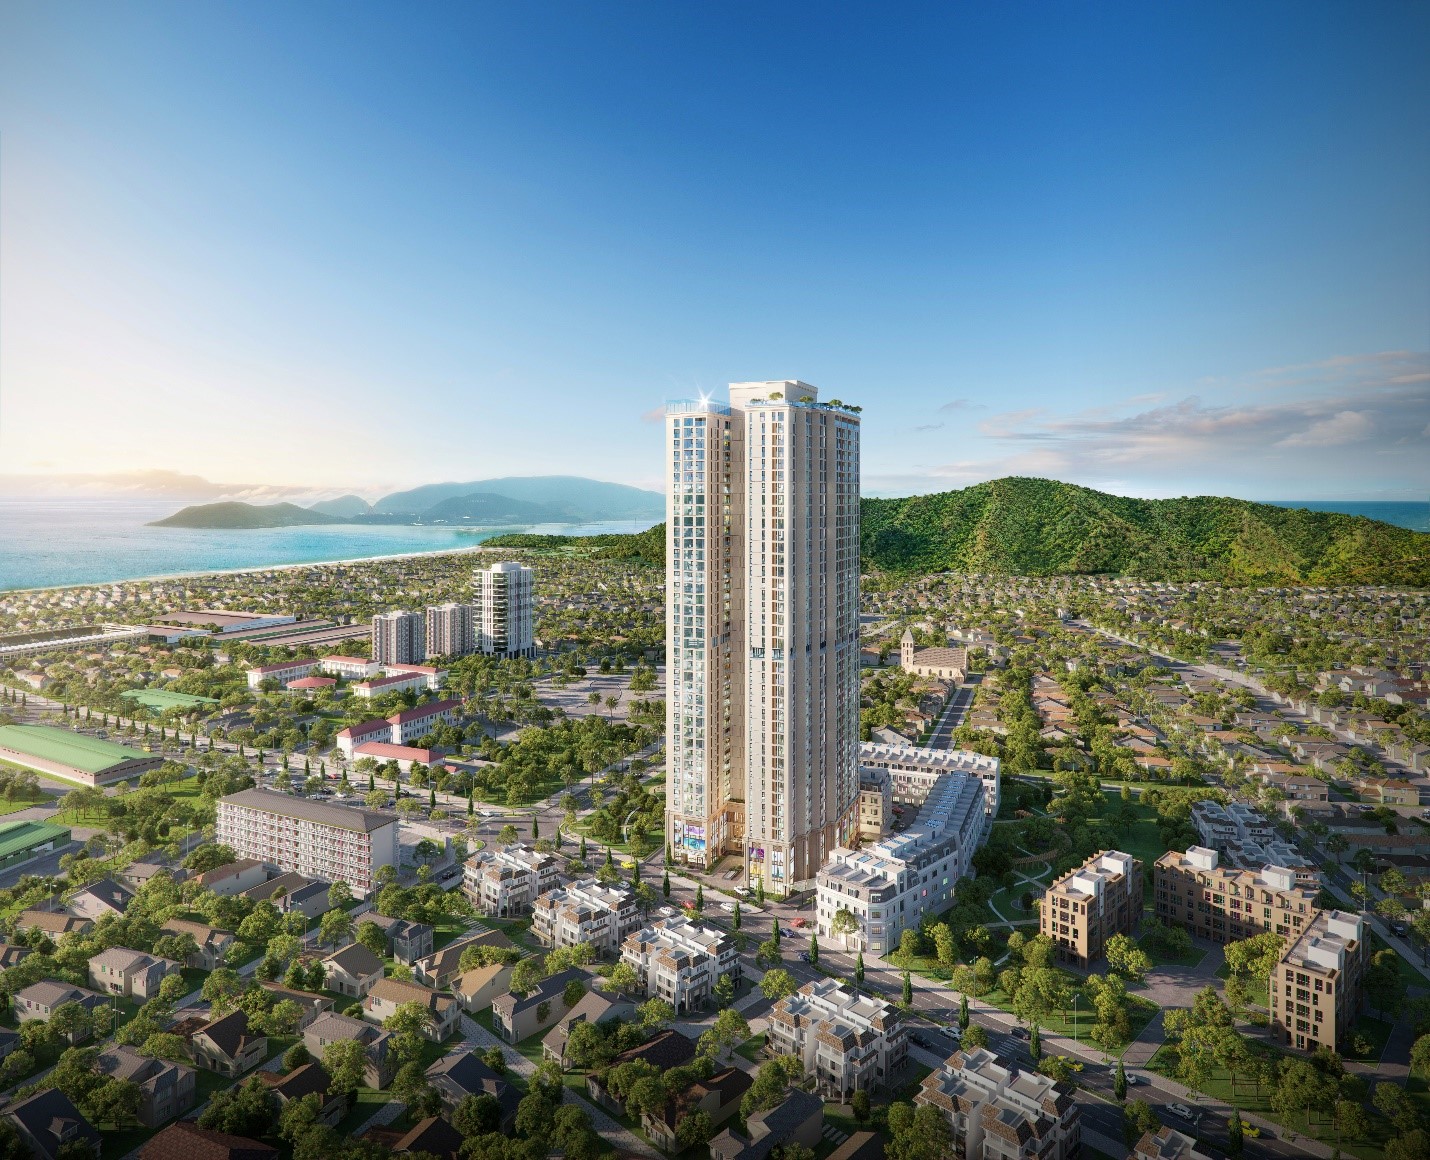 Dự án Grand Mark Nha Trang (phường Phước Long, TP Nha Trang) bổ sung nguồn cung các sản phẩm căn hộ, dual-key, penthouse và shop villa... ra thị trường. Ảnh phối cảnh: PropertyX